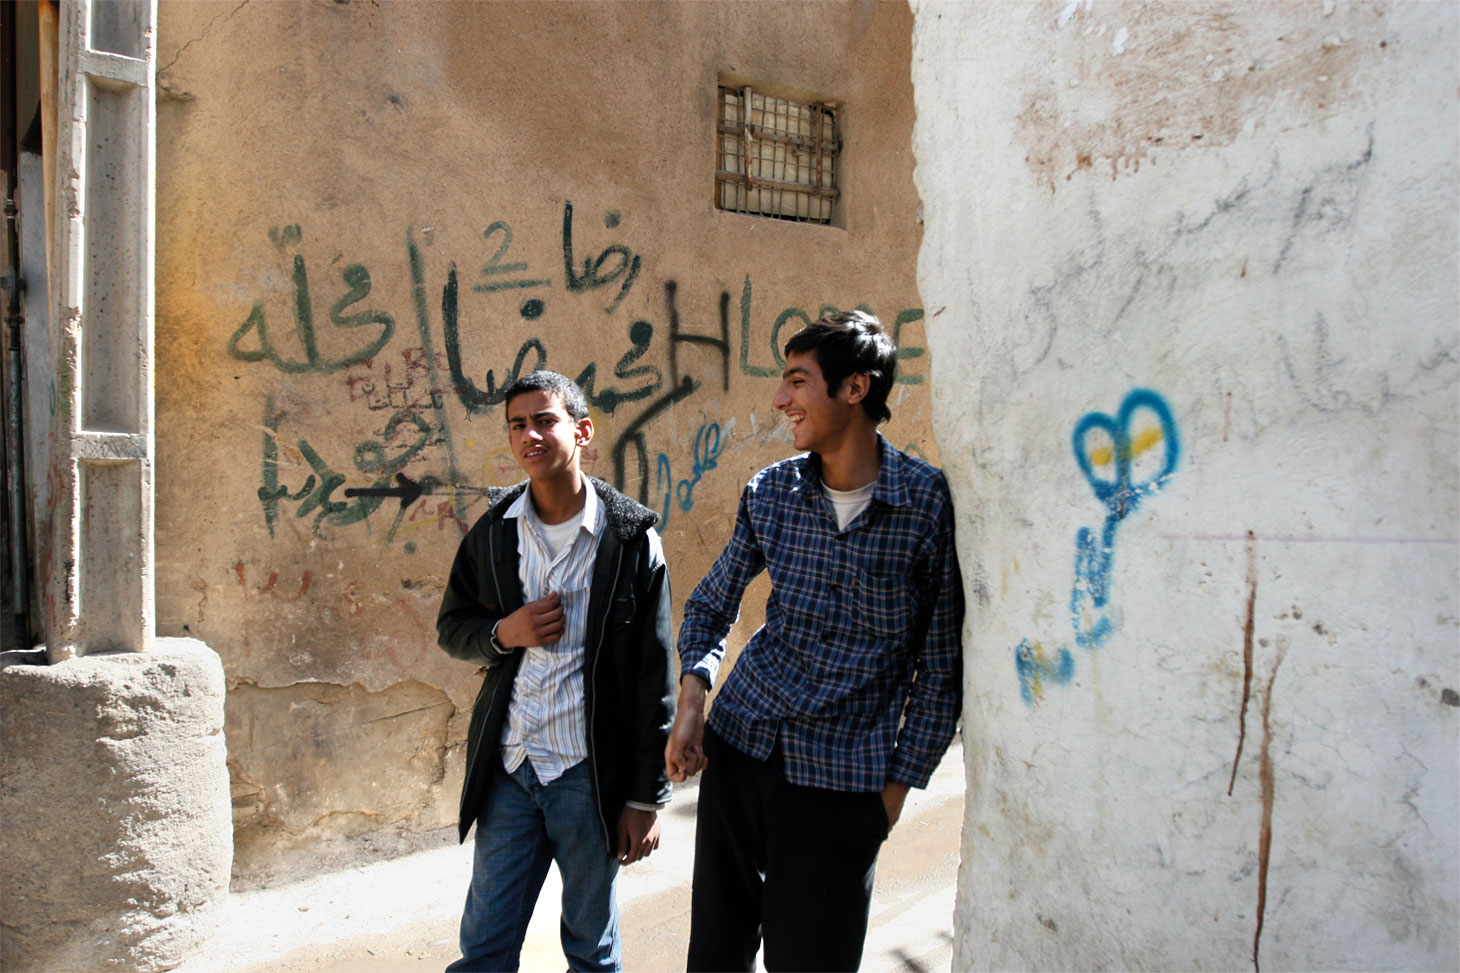 Deux jeunes hommes marchent dans un quartier juif de Shiraz. Sur le mur derrière eux, un terme péjoratif pour les Juifs est écrit en graffiti. (Crédit : Hassan Sarbakhsian/via JTA)